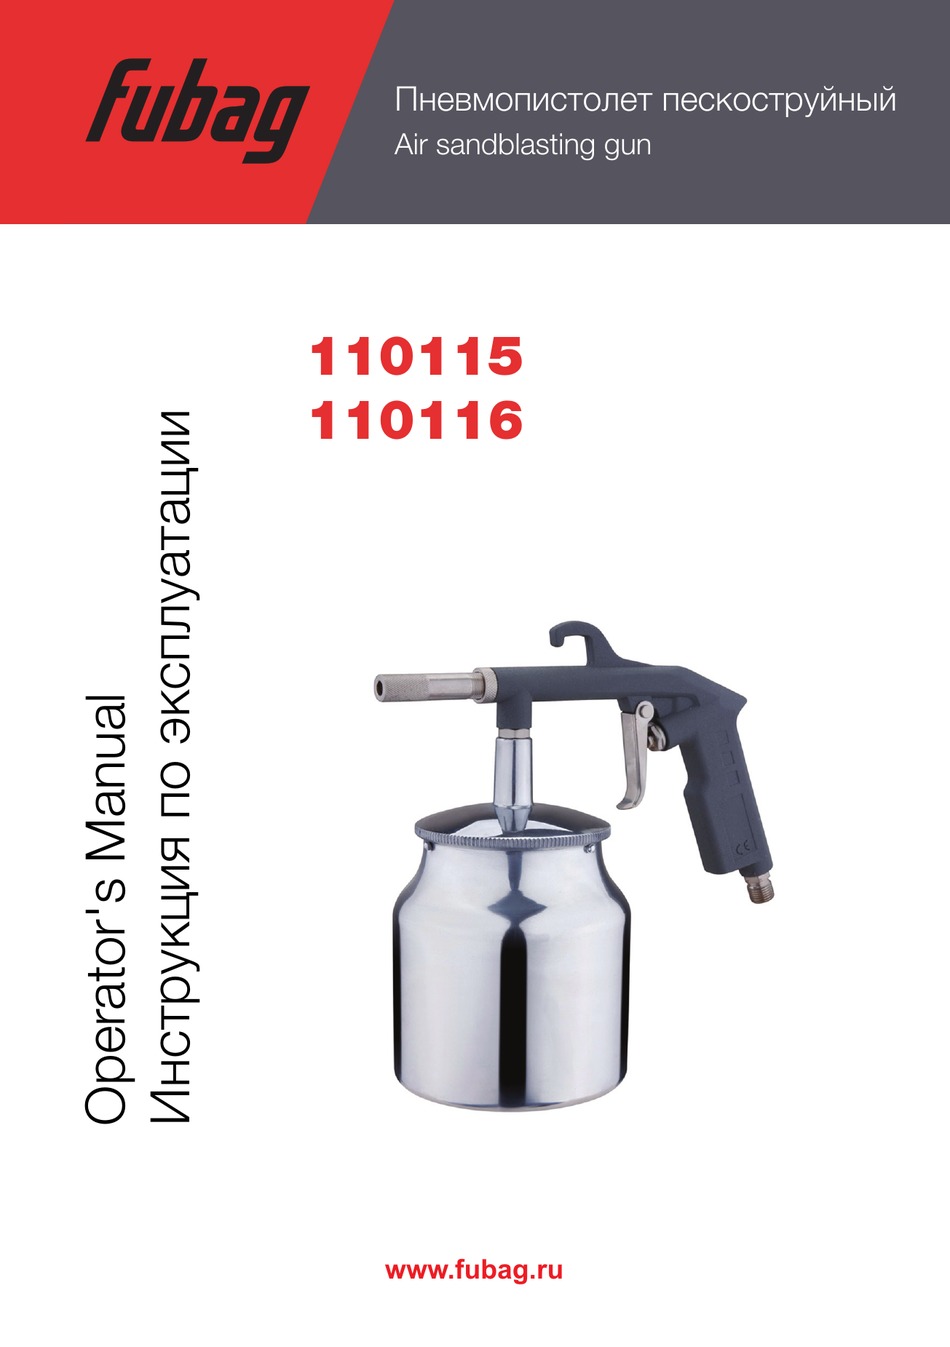 FUBAG 110115 OPERATOR'S MANUAL Pdf Download | ManualsLib